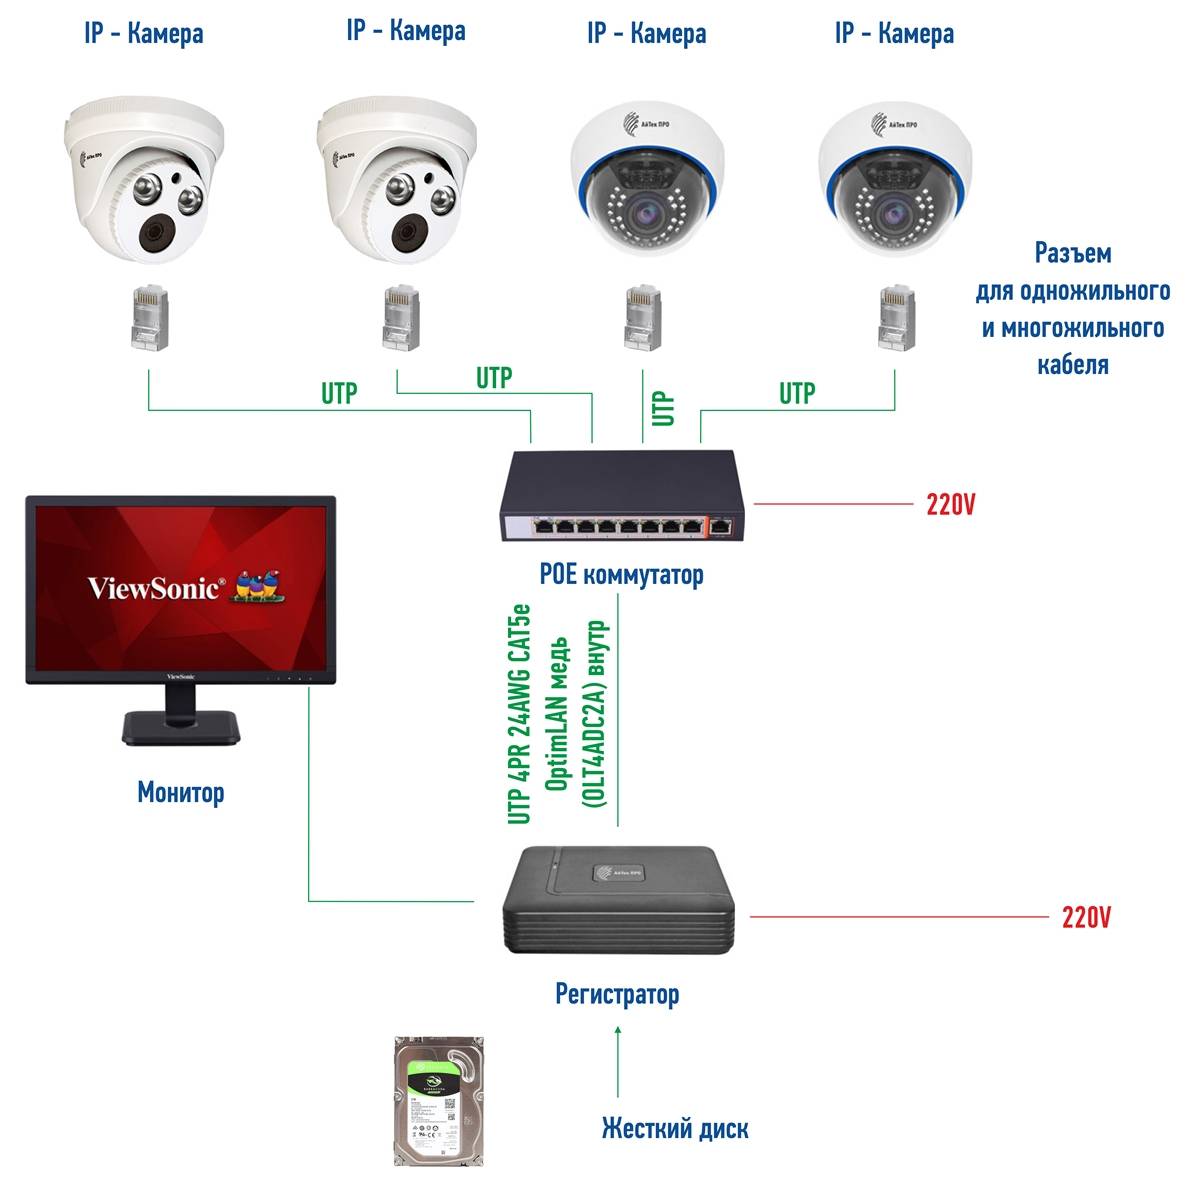 2 кабеля для видеонаблюдения с питанием - выбор, аналог и ip, применение, помехи